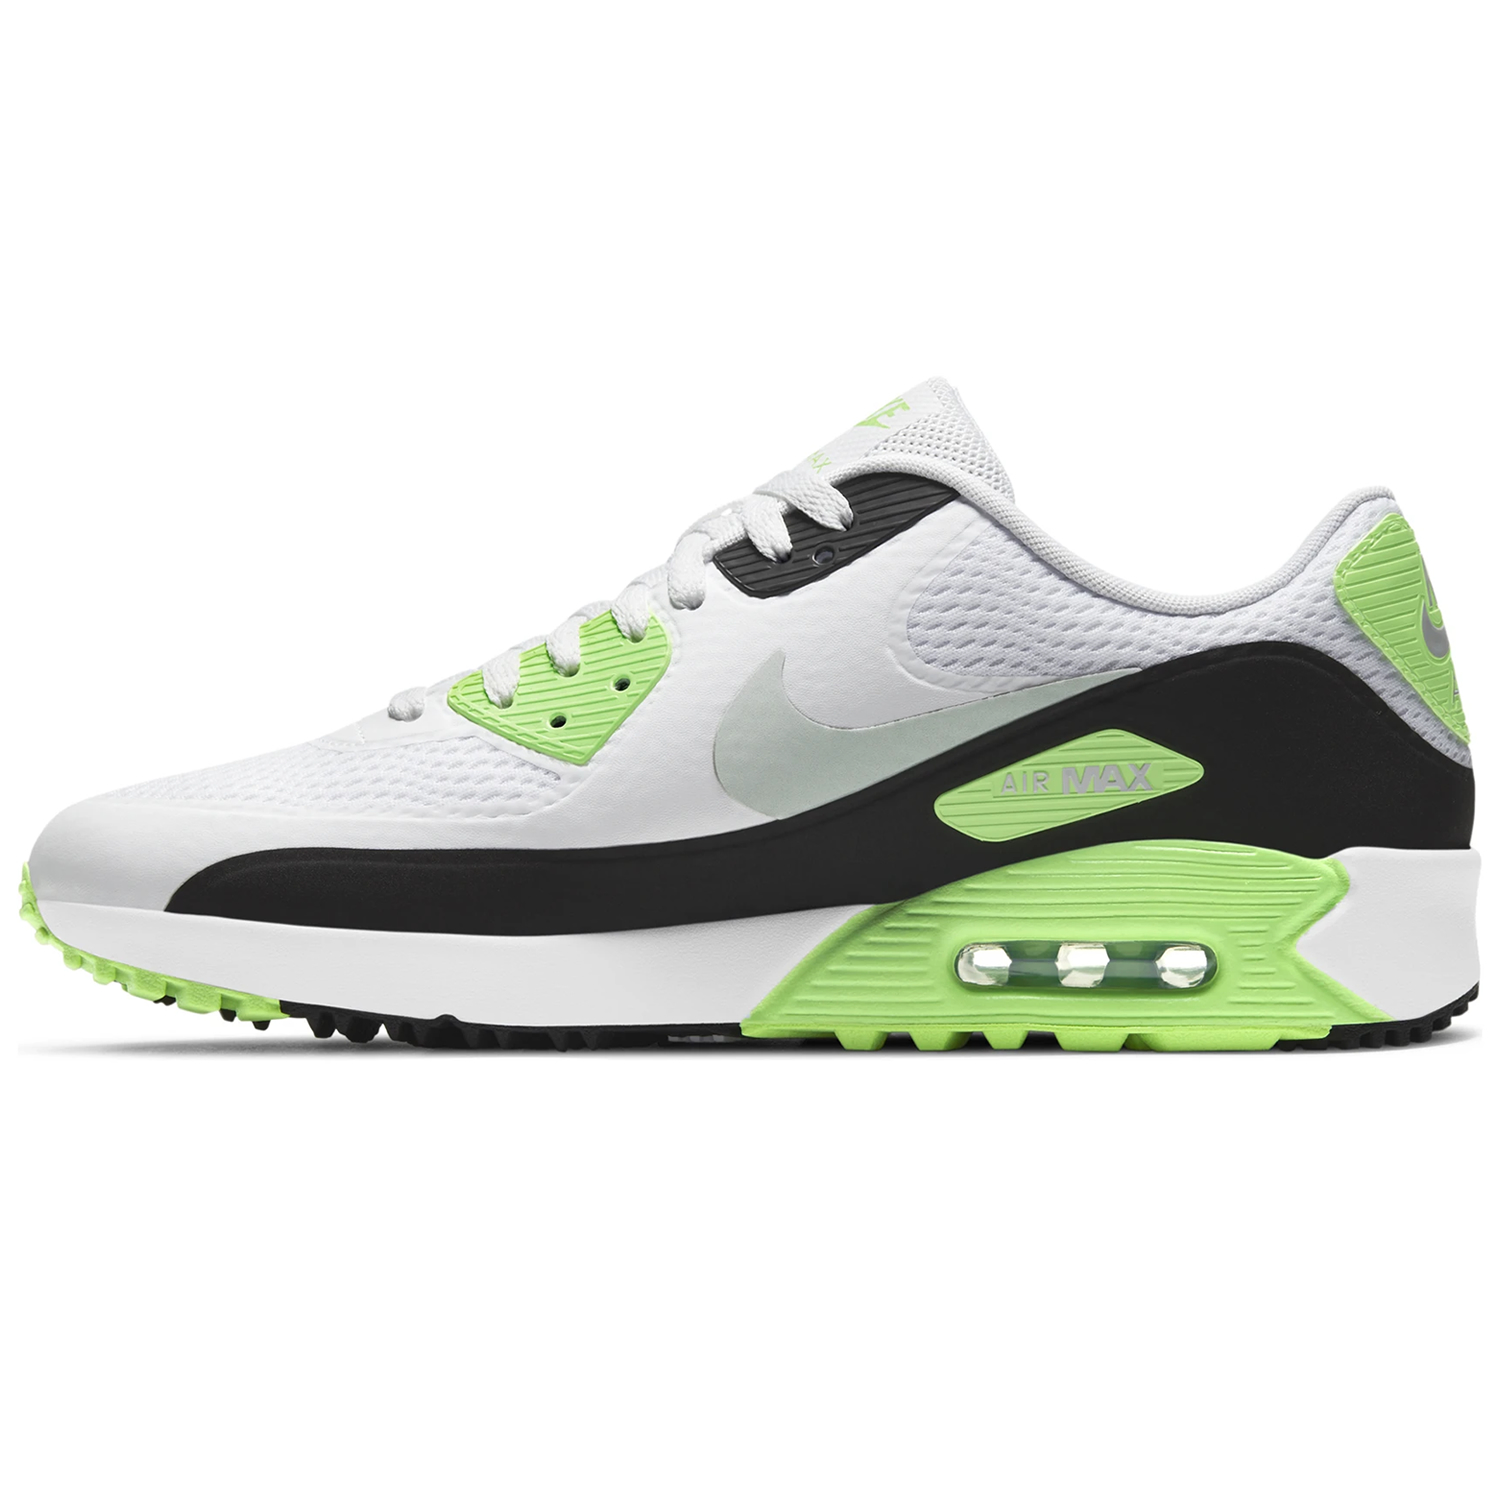 Nike Air Max 90 G Golf Shoes White/Neutral Grey/Black/Flash Lime ...